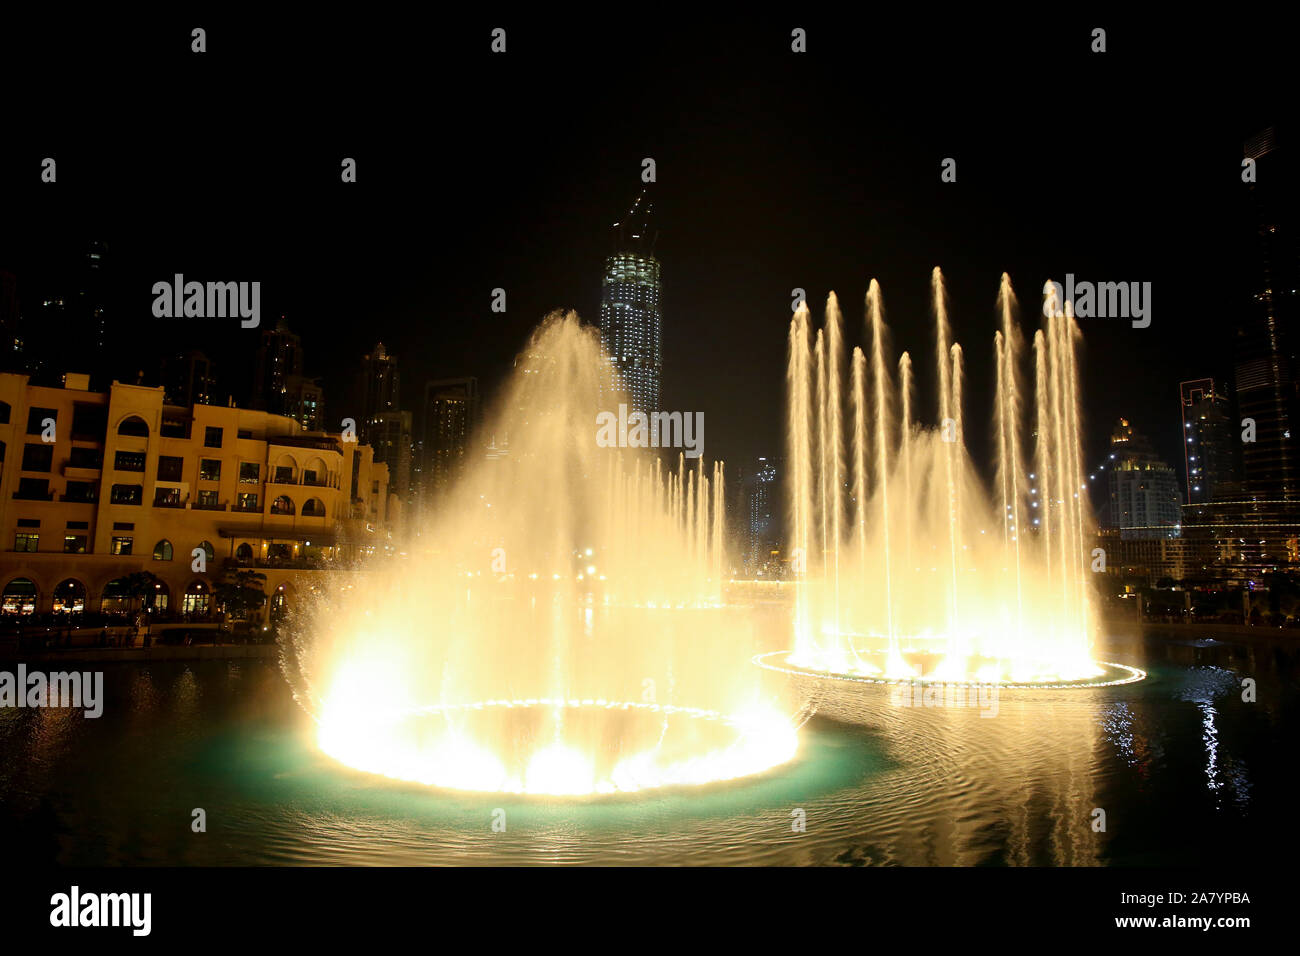 Eau et lumière dans le centre-ville de ville la nuit avec tous les skyscrappers illluminated et se reflétant dans le lac, Dubaï, Emirats Arabes Unis. Banque D'Images